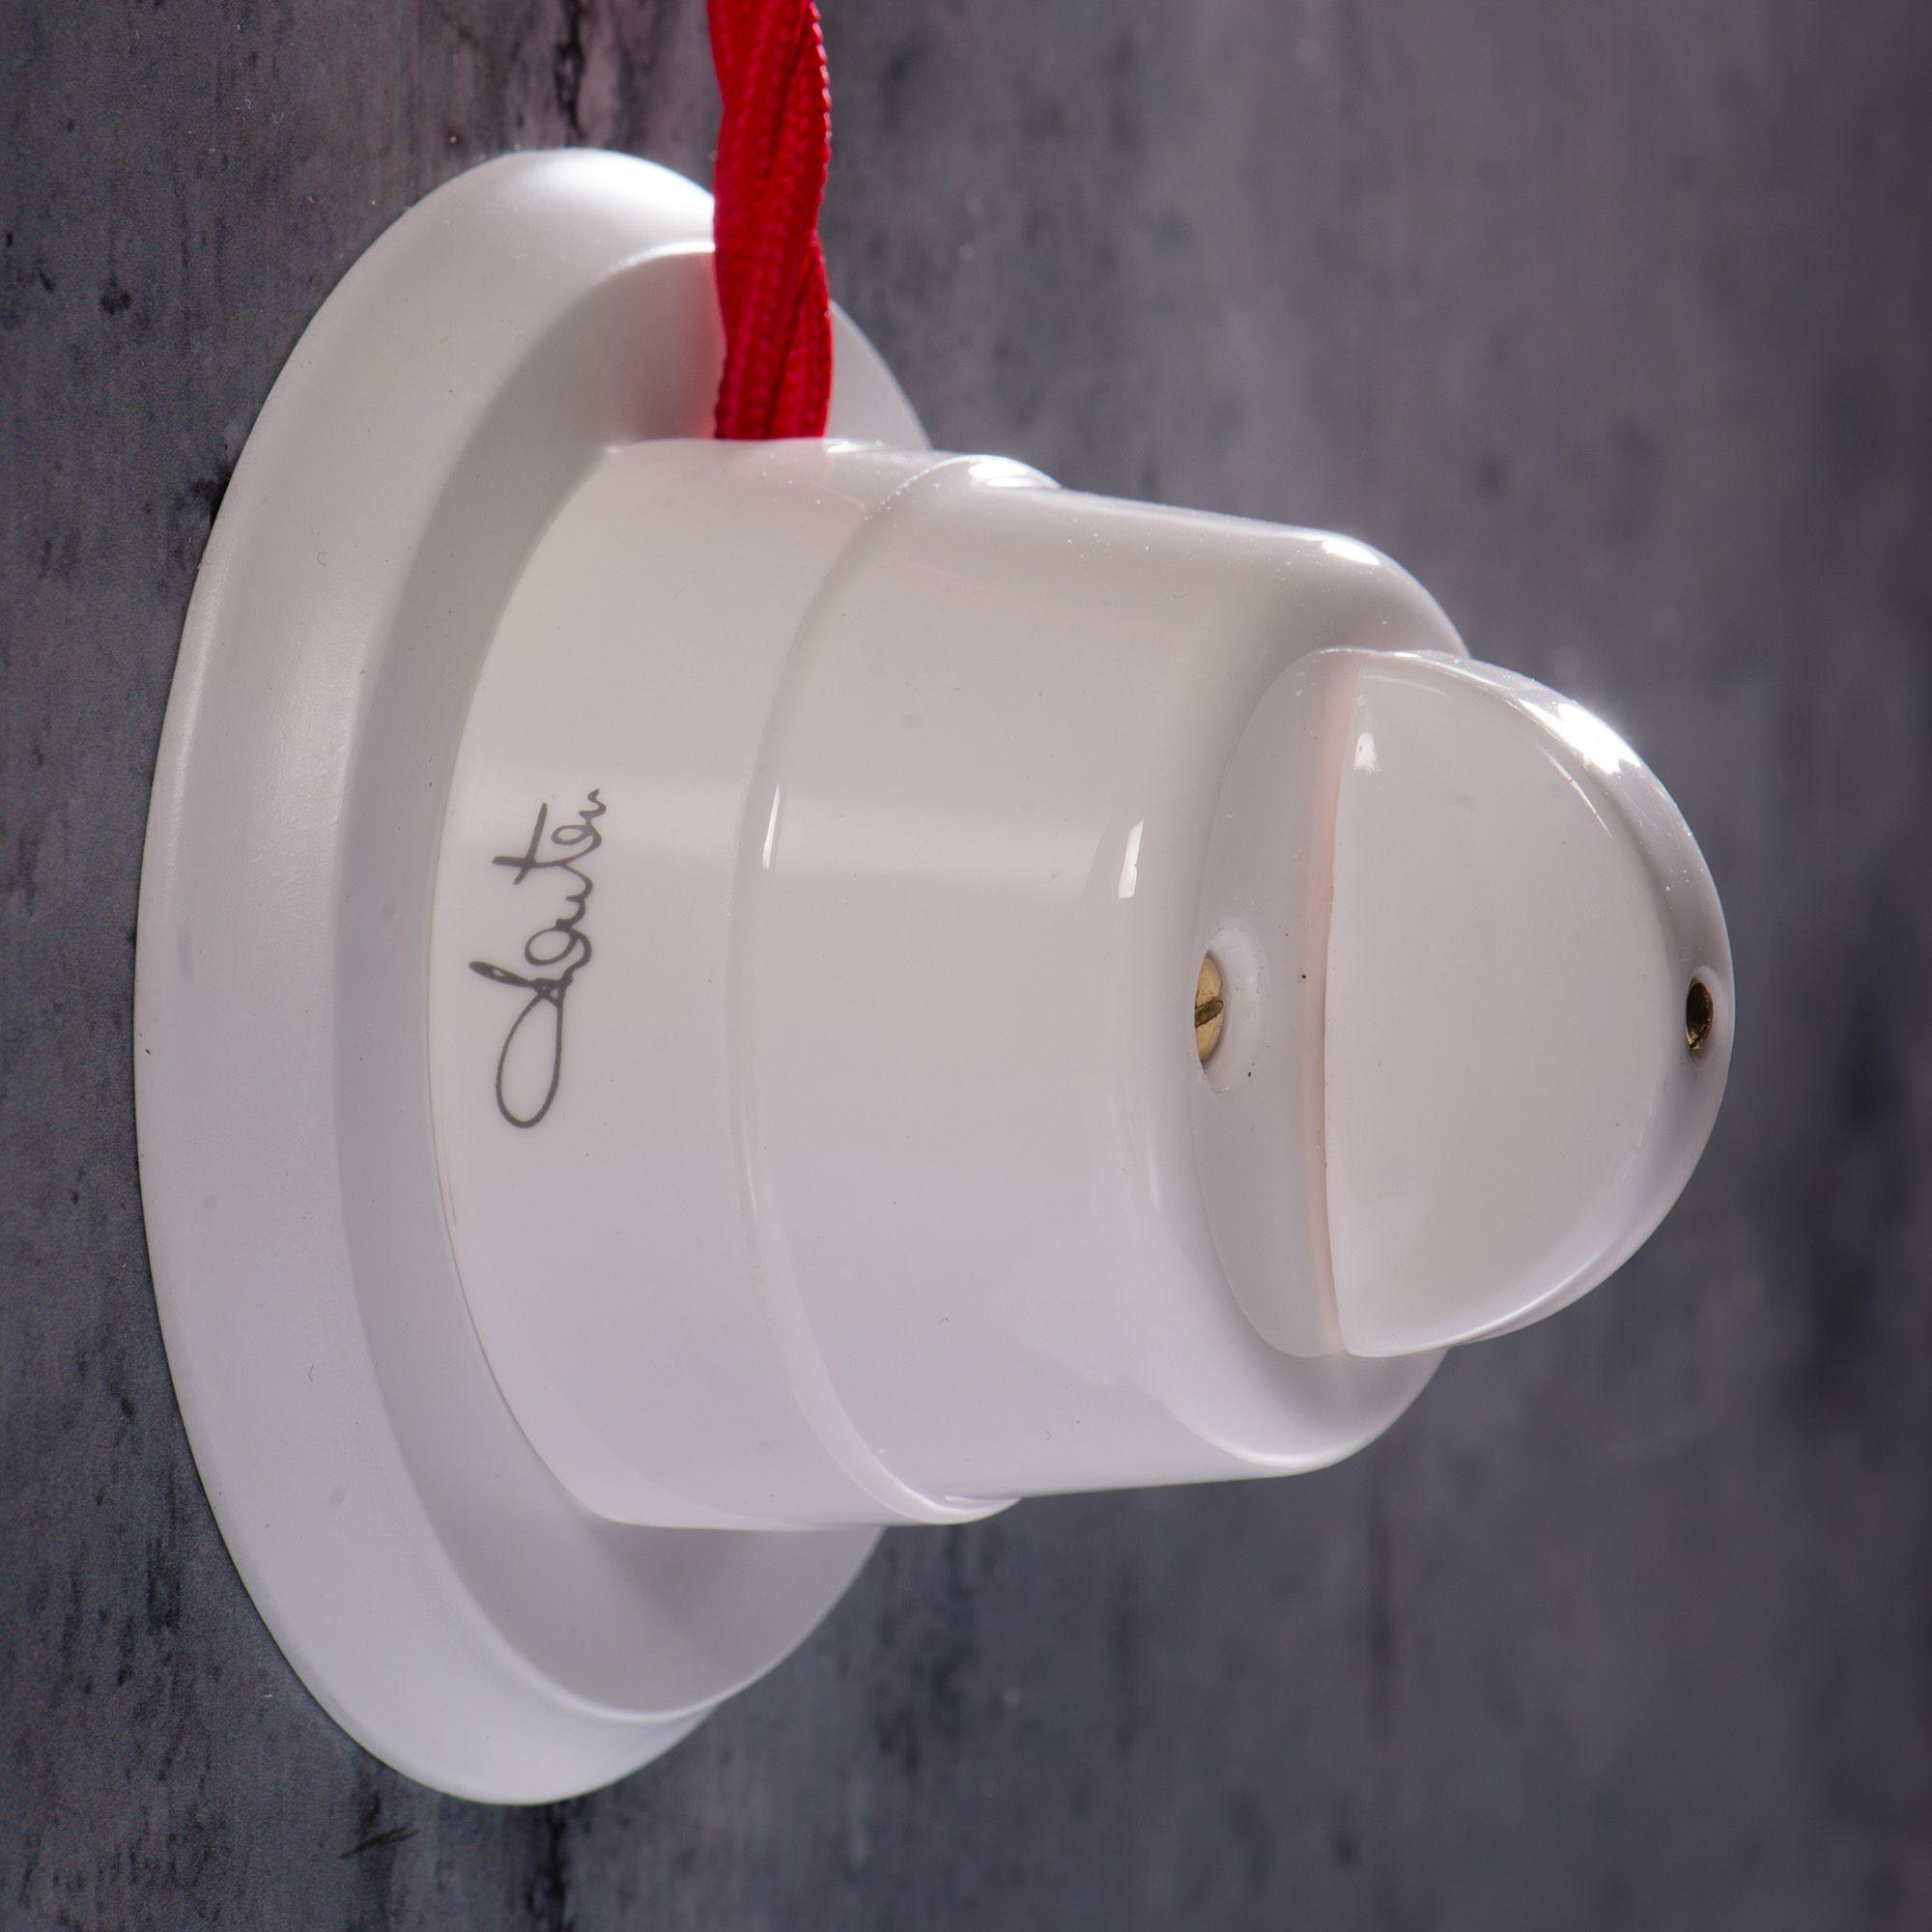 Interruttore deviatore da parete in ceramica 10AX 250V, colore bianco Fanton 84001